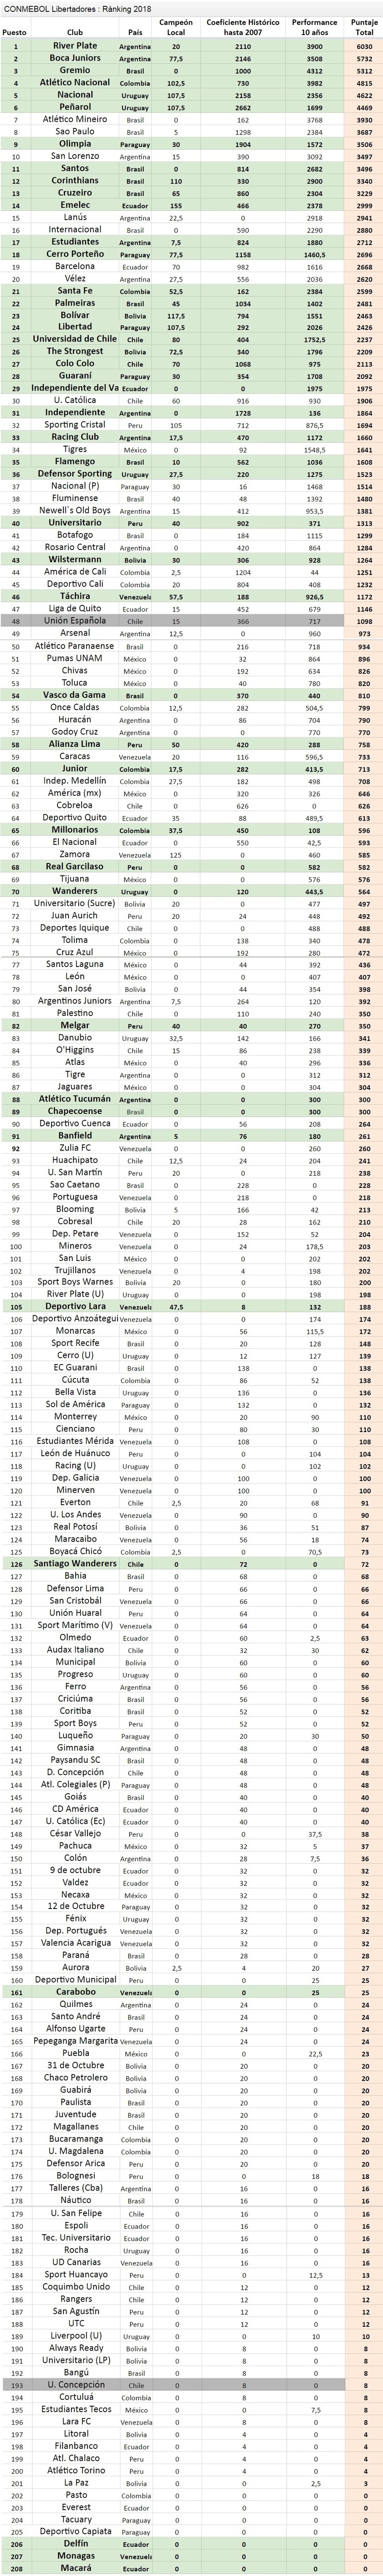 Ranking da Conmebol para a Libertadores 2018 (Foto: Reprodução/Conmebol)